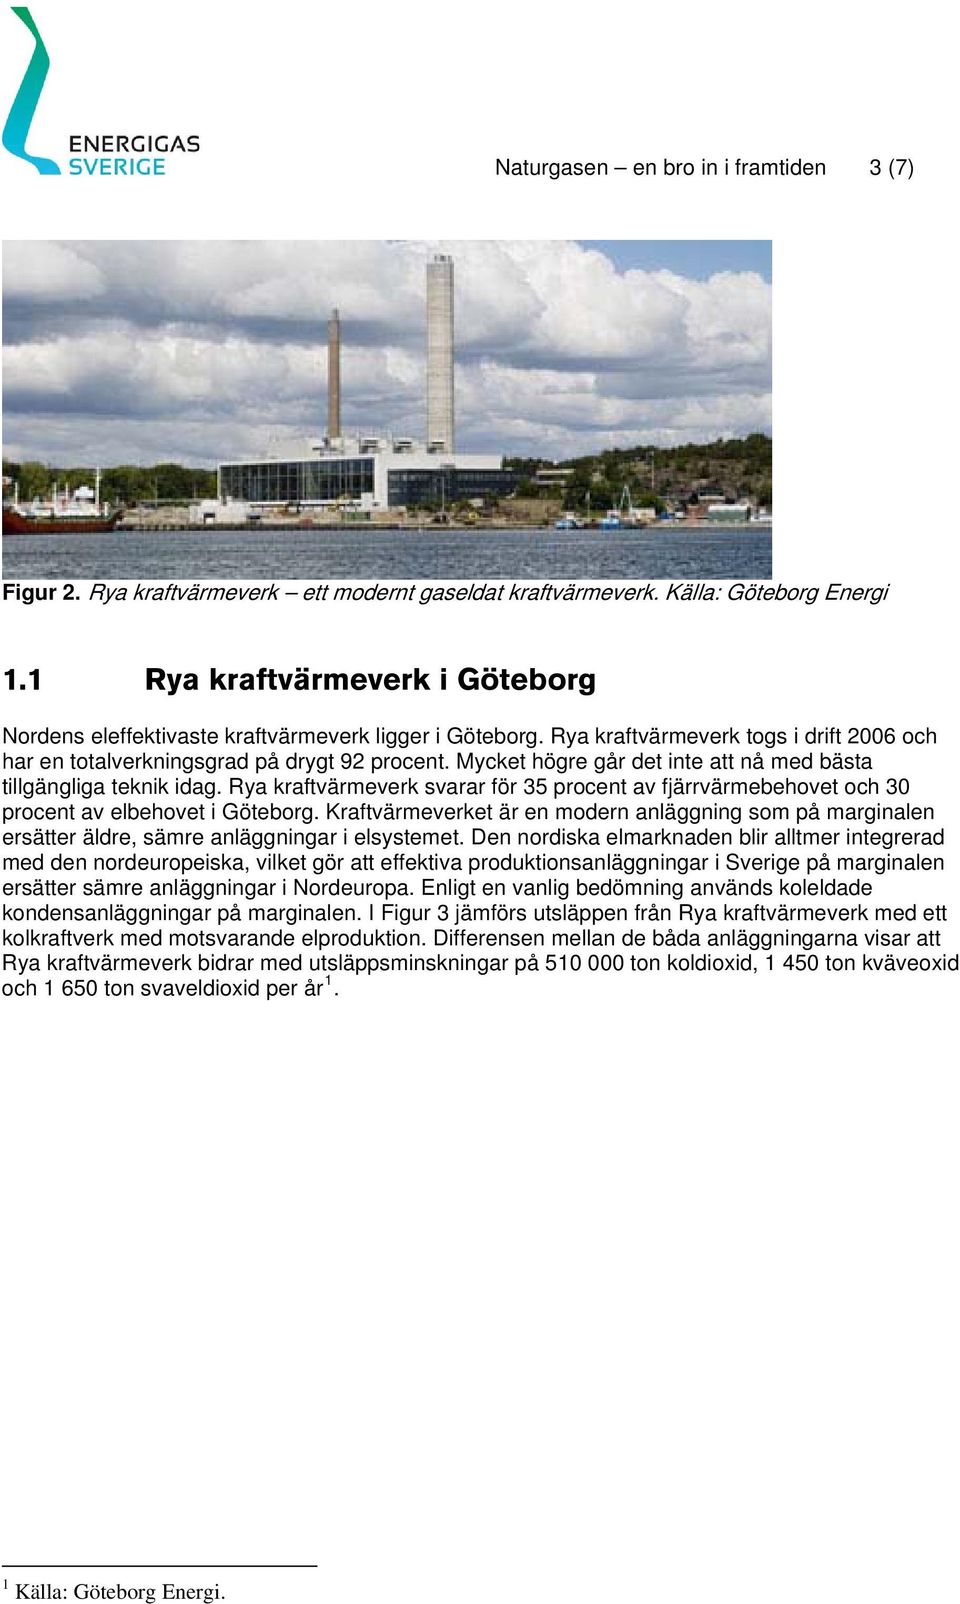 Mycket högre går det inte att nå med bästa tillgängliga teknik idag. Rya kraftvärmeverk svarar för 35 procent av fjärrvärmebehovet och 30 procent av elbehovet i Göteborg.